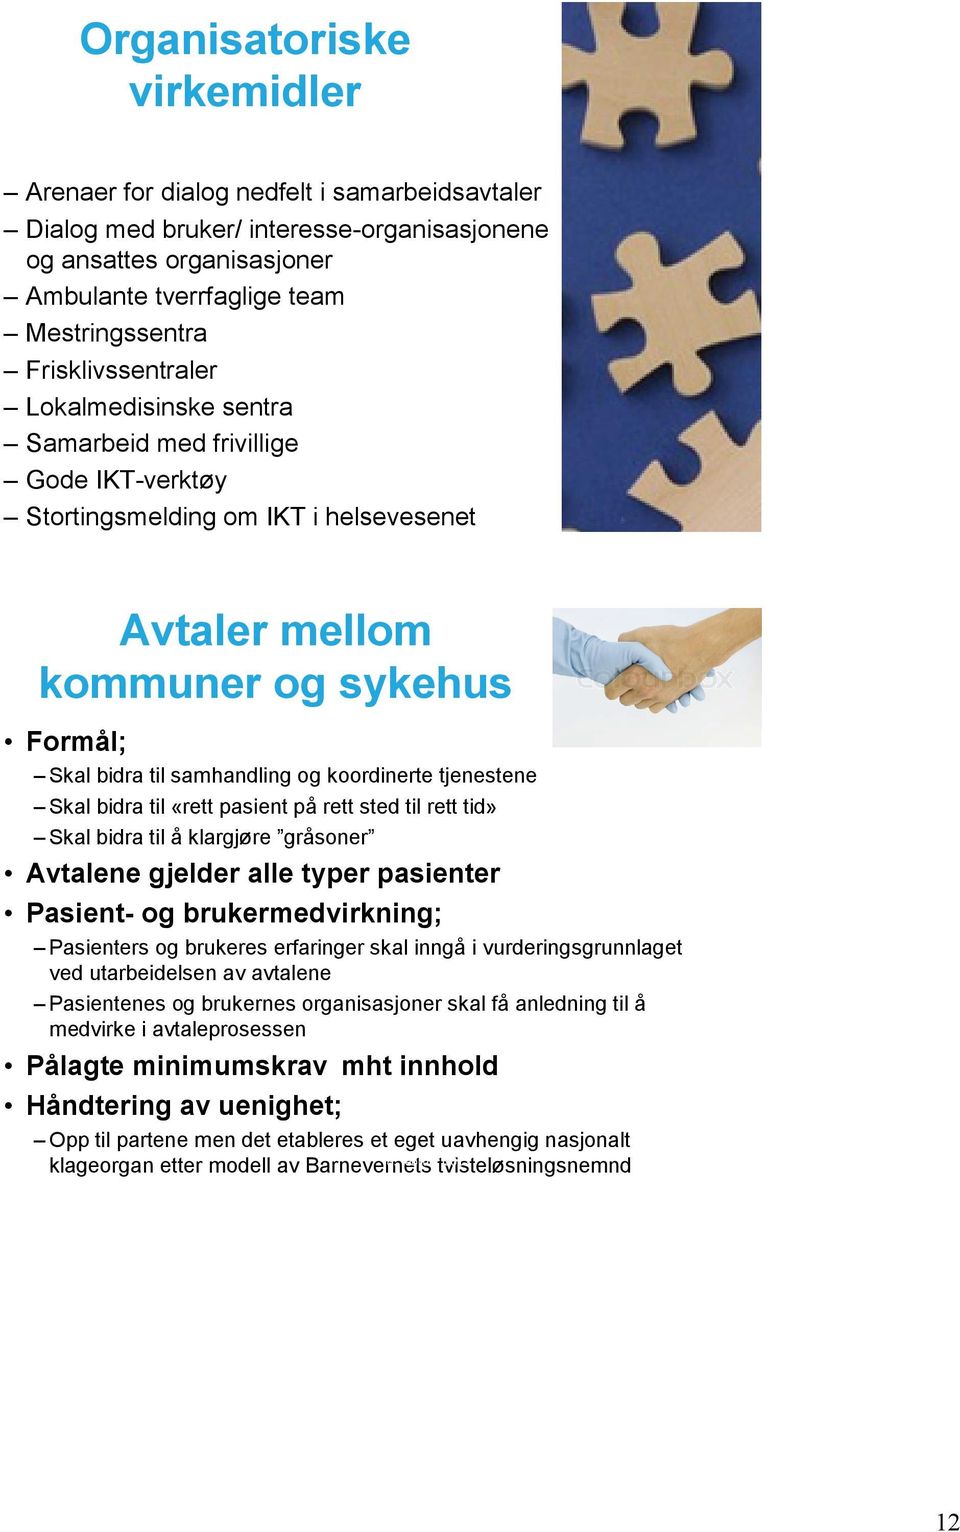 februar 2012 Avtaler mellom kommuner og sykehus Formål; Skal bidra til samhandling og koordinerte tjenestene Skal bidra til «rett pasient på rett sted til rett tid» Skal bidra til å klargjøre